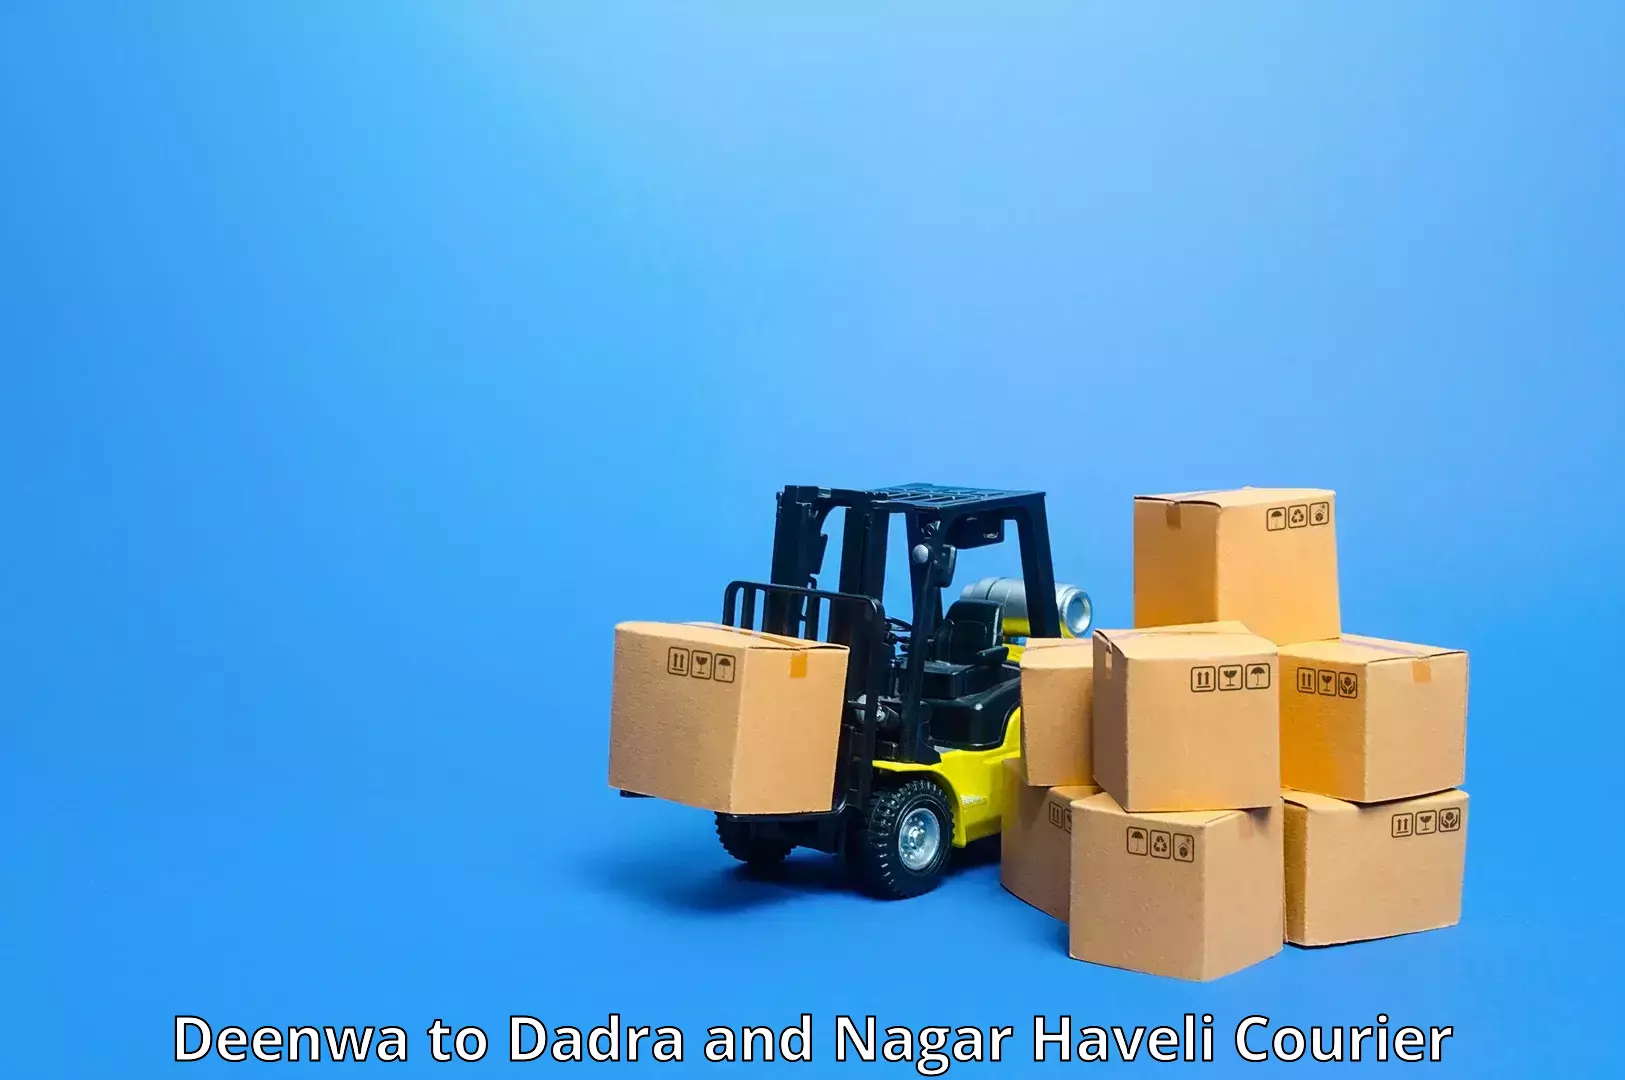 Efficient parcel service Deenwa to Silvassa